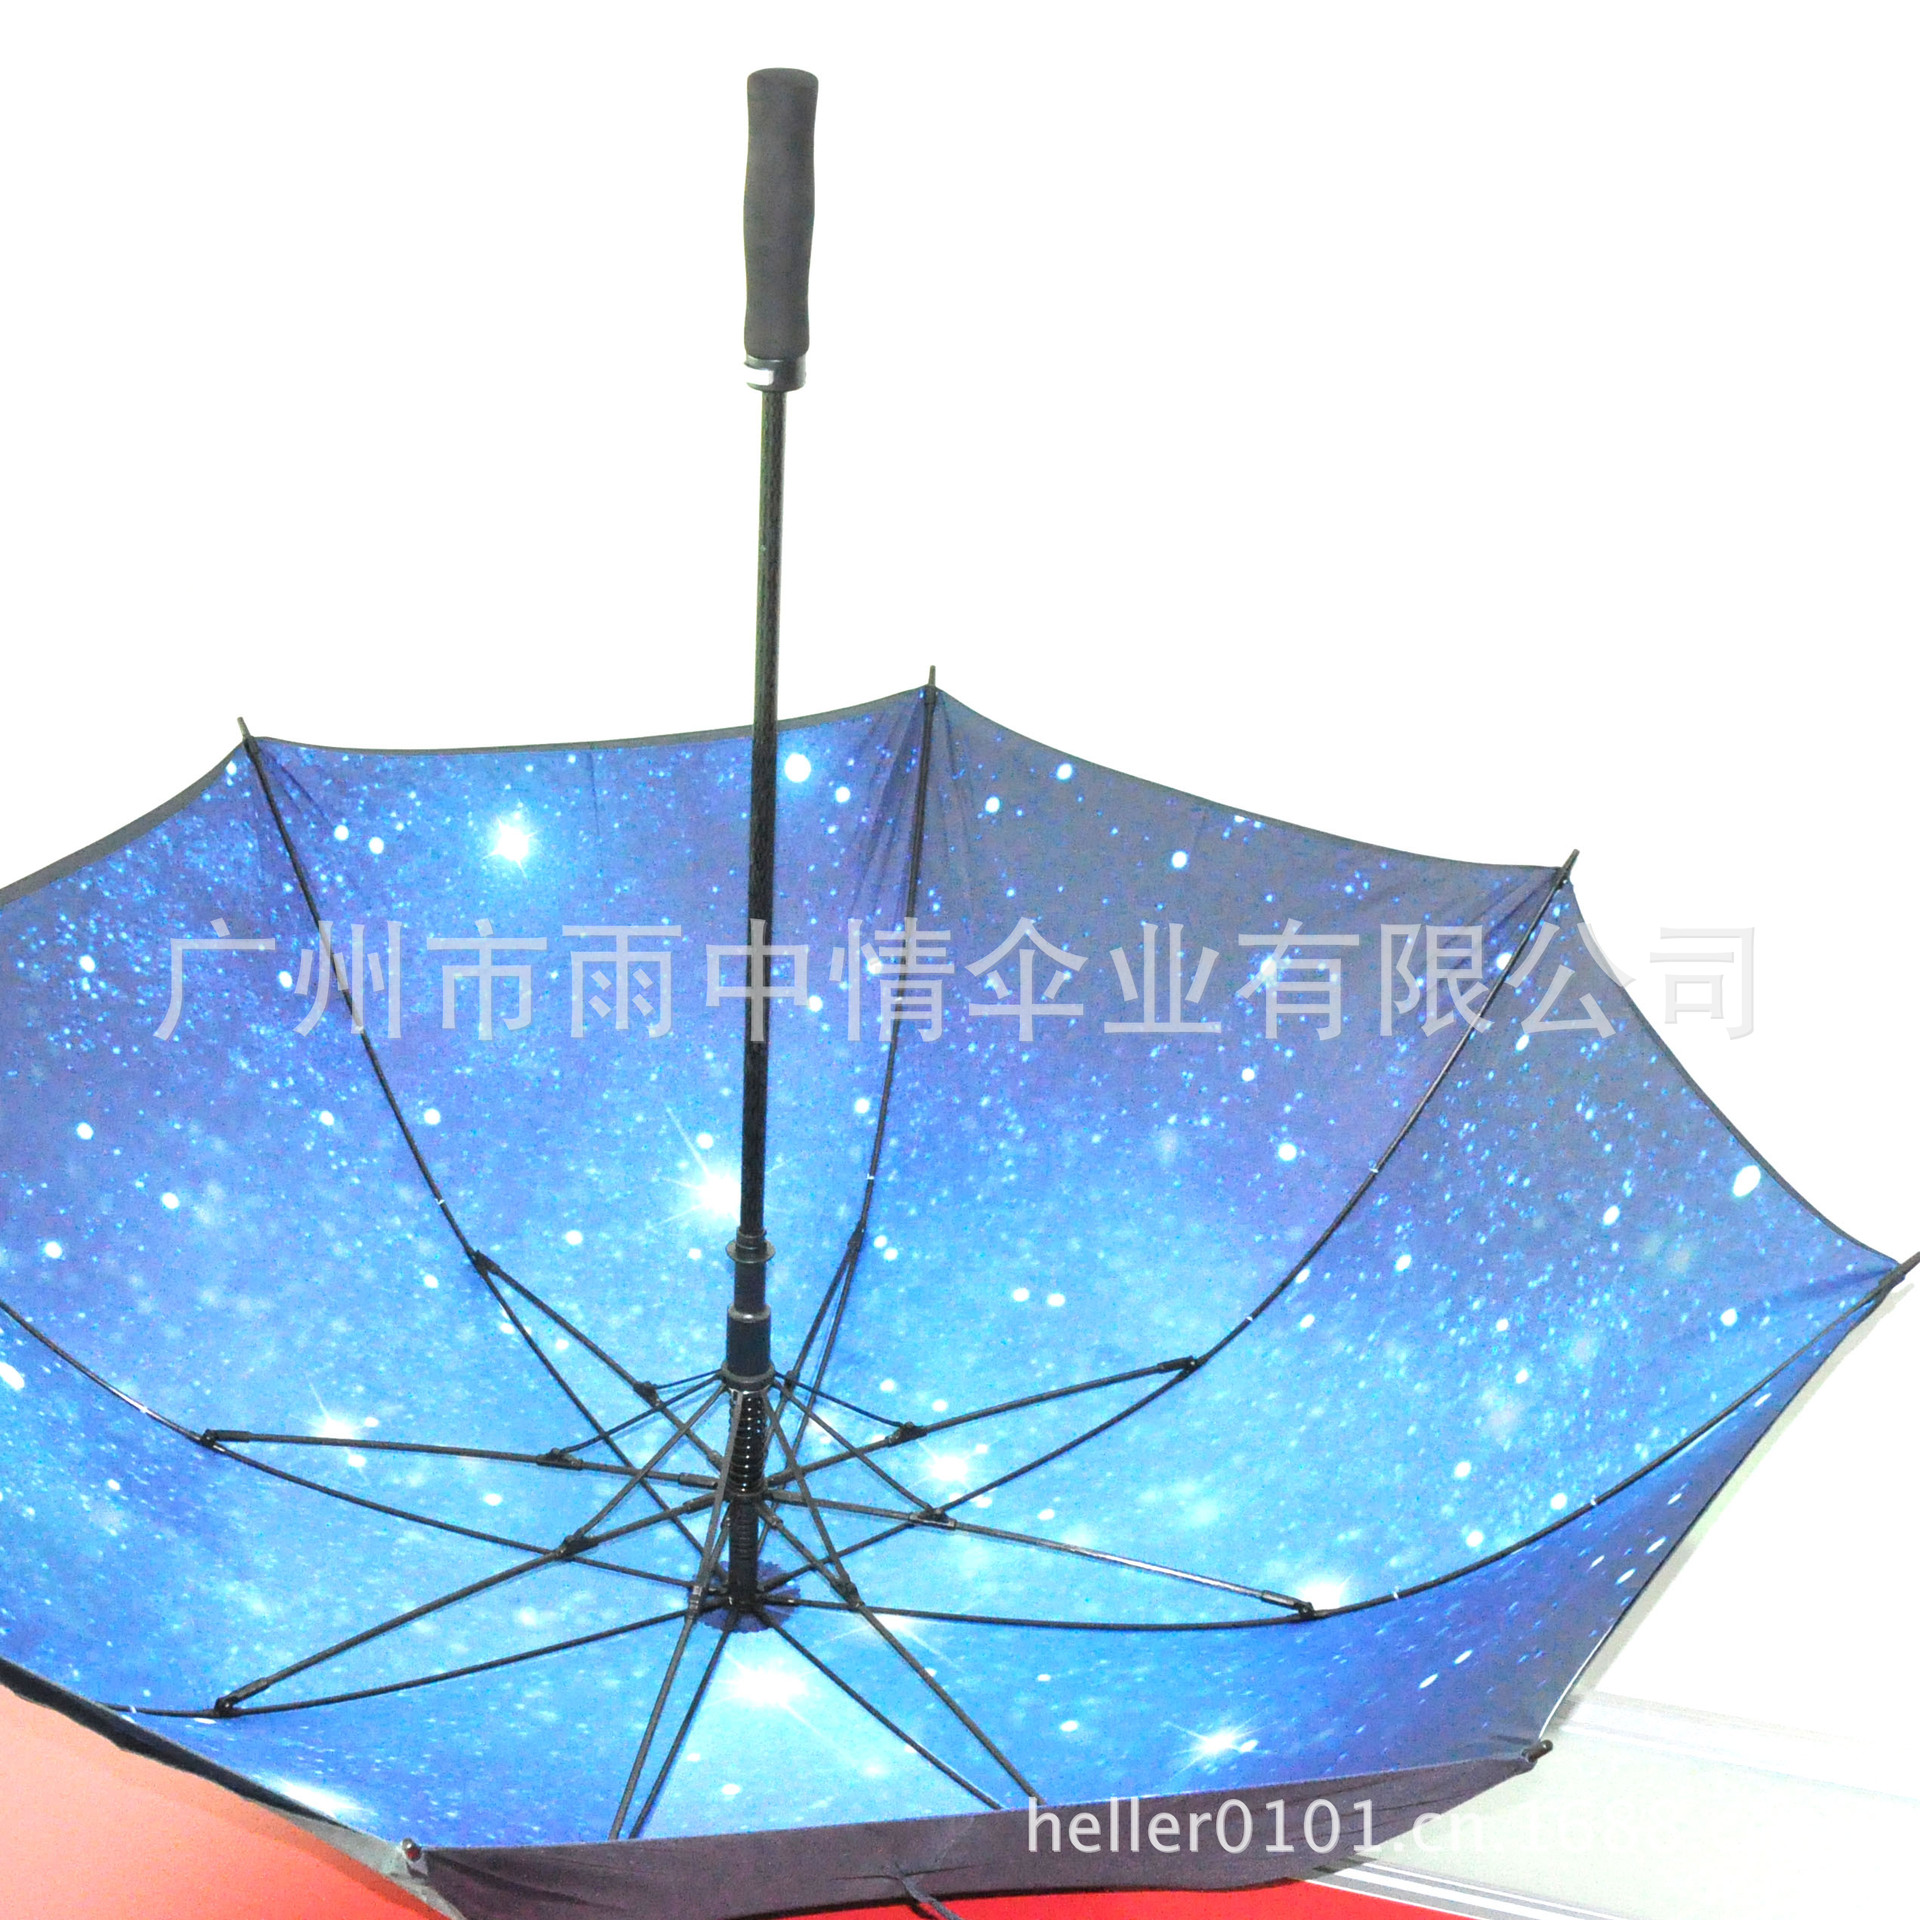 【天空下的雨伞! 房地产商定制双层伞面满版星